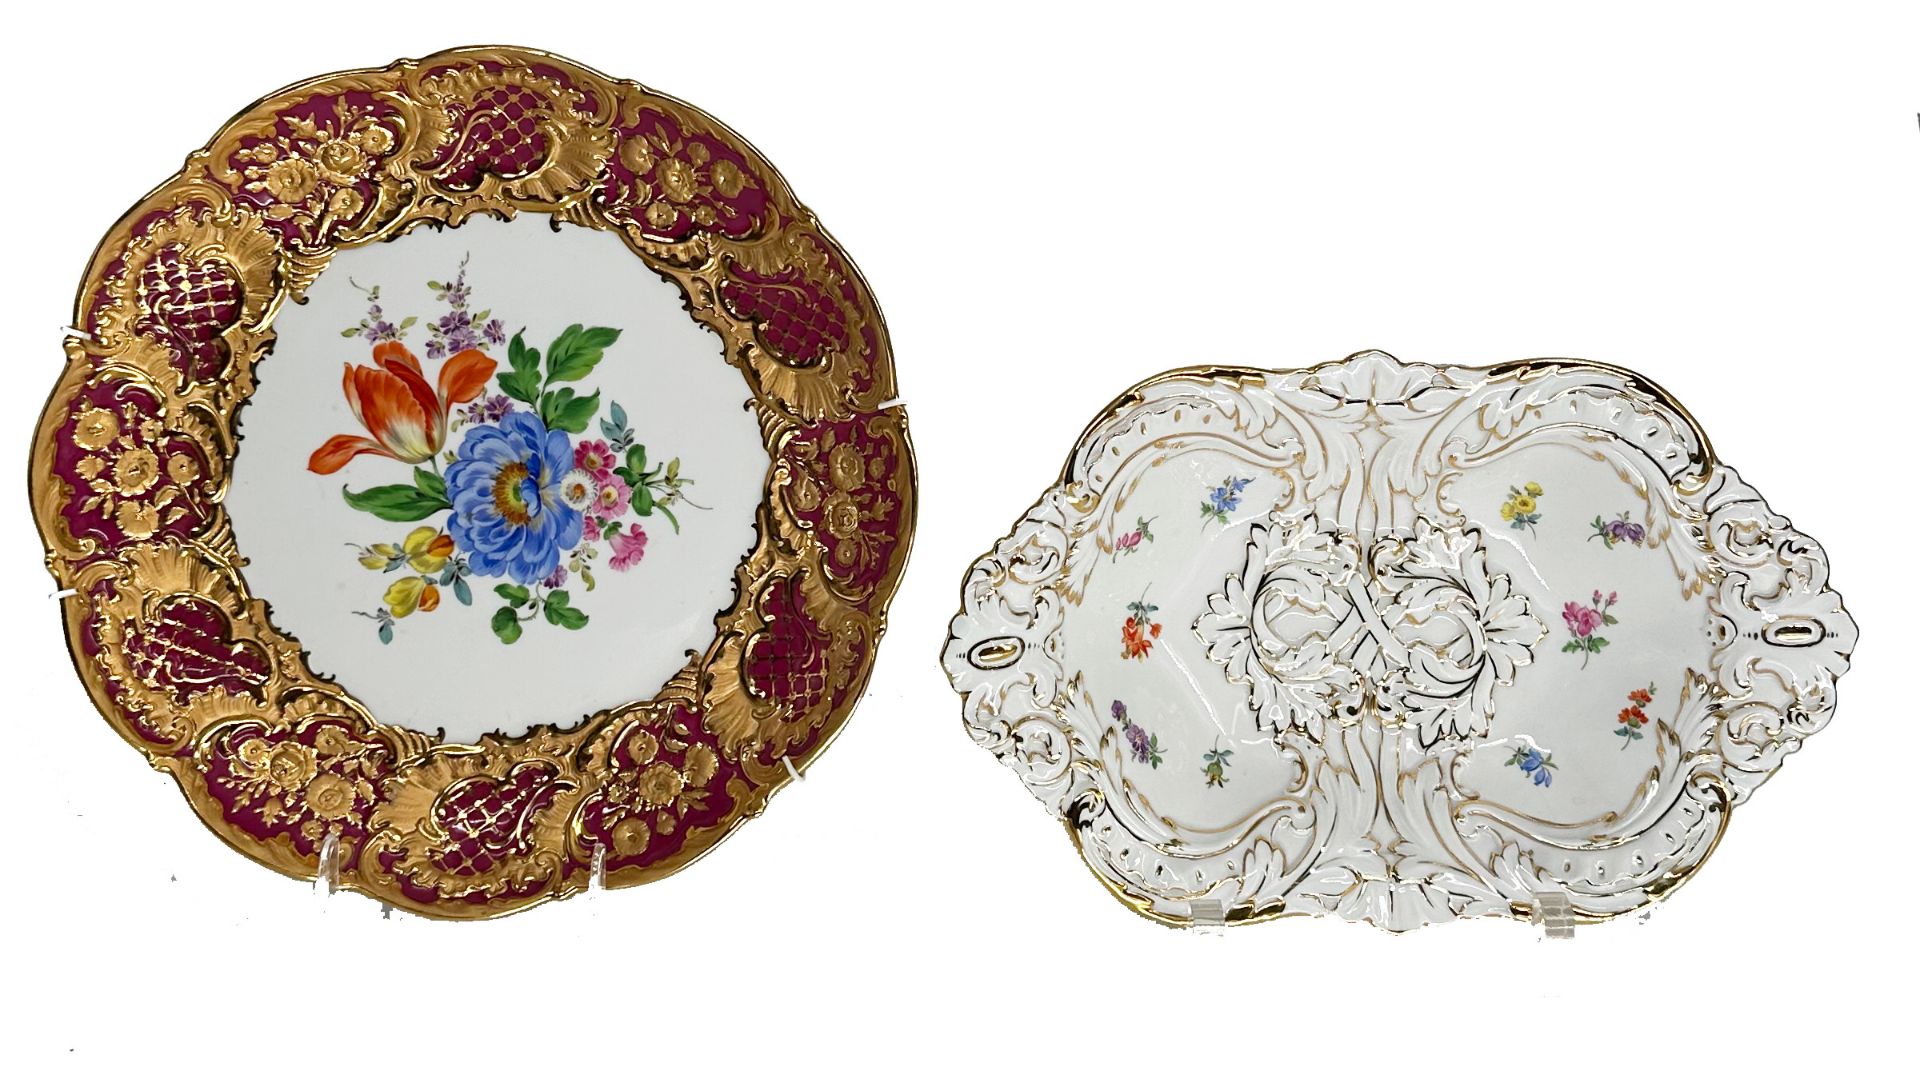 Konvolut Meissen: 1 x Prunkteller D 29 cm, 1 x Schale Goldstaffage, Blumen, 30,5 x 20 cm, beide